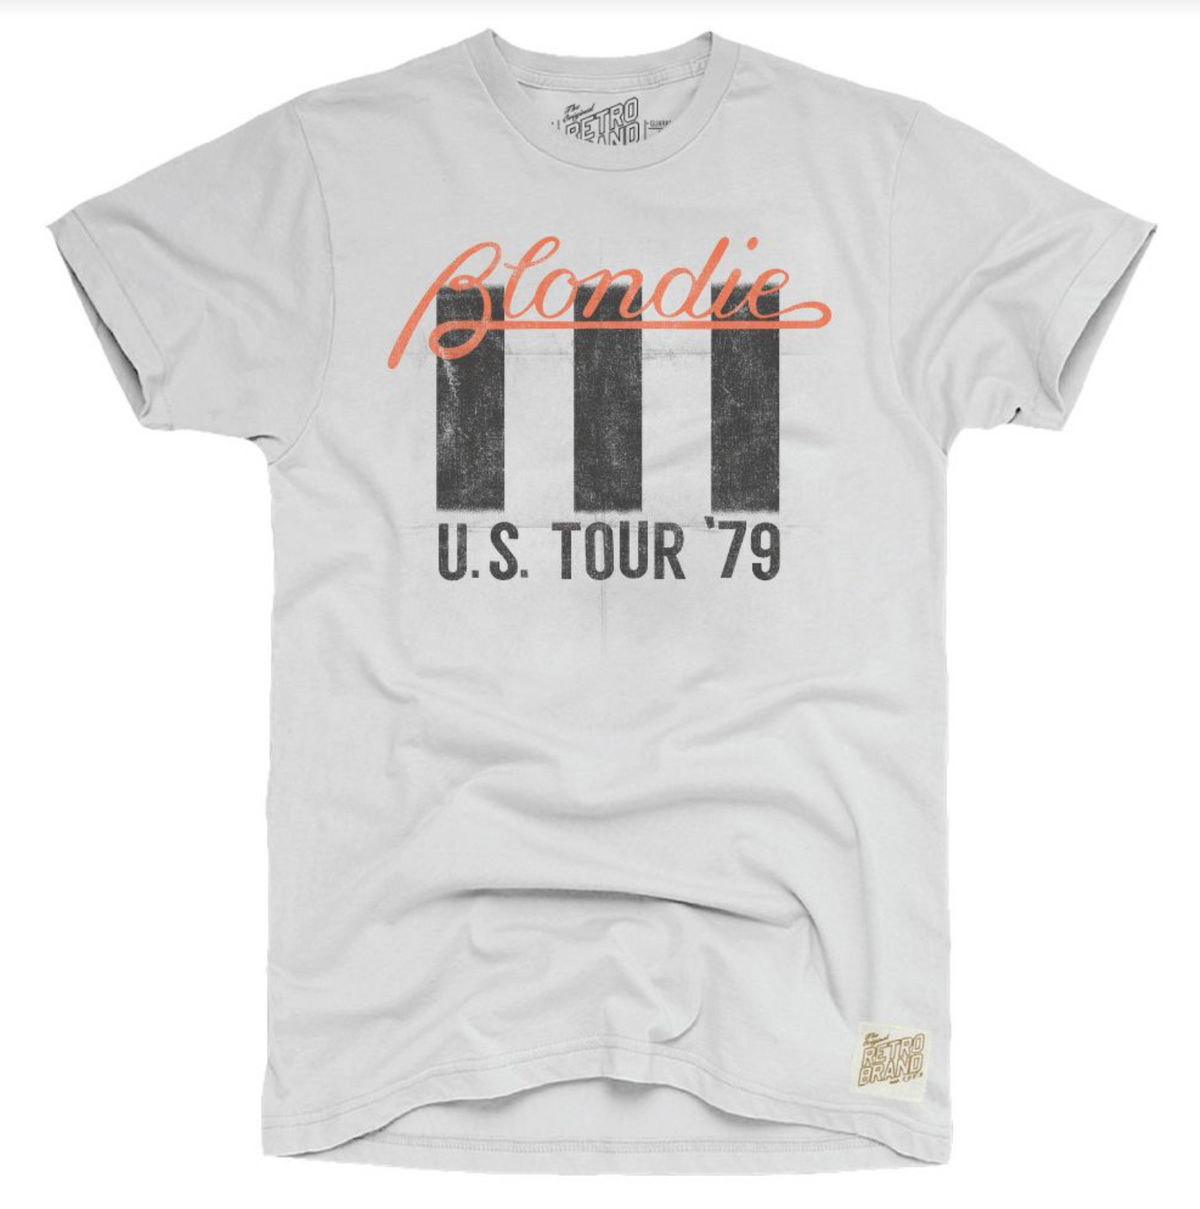 Blondie U.S. Tour '79 Tee